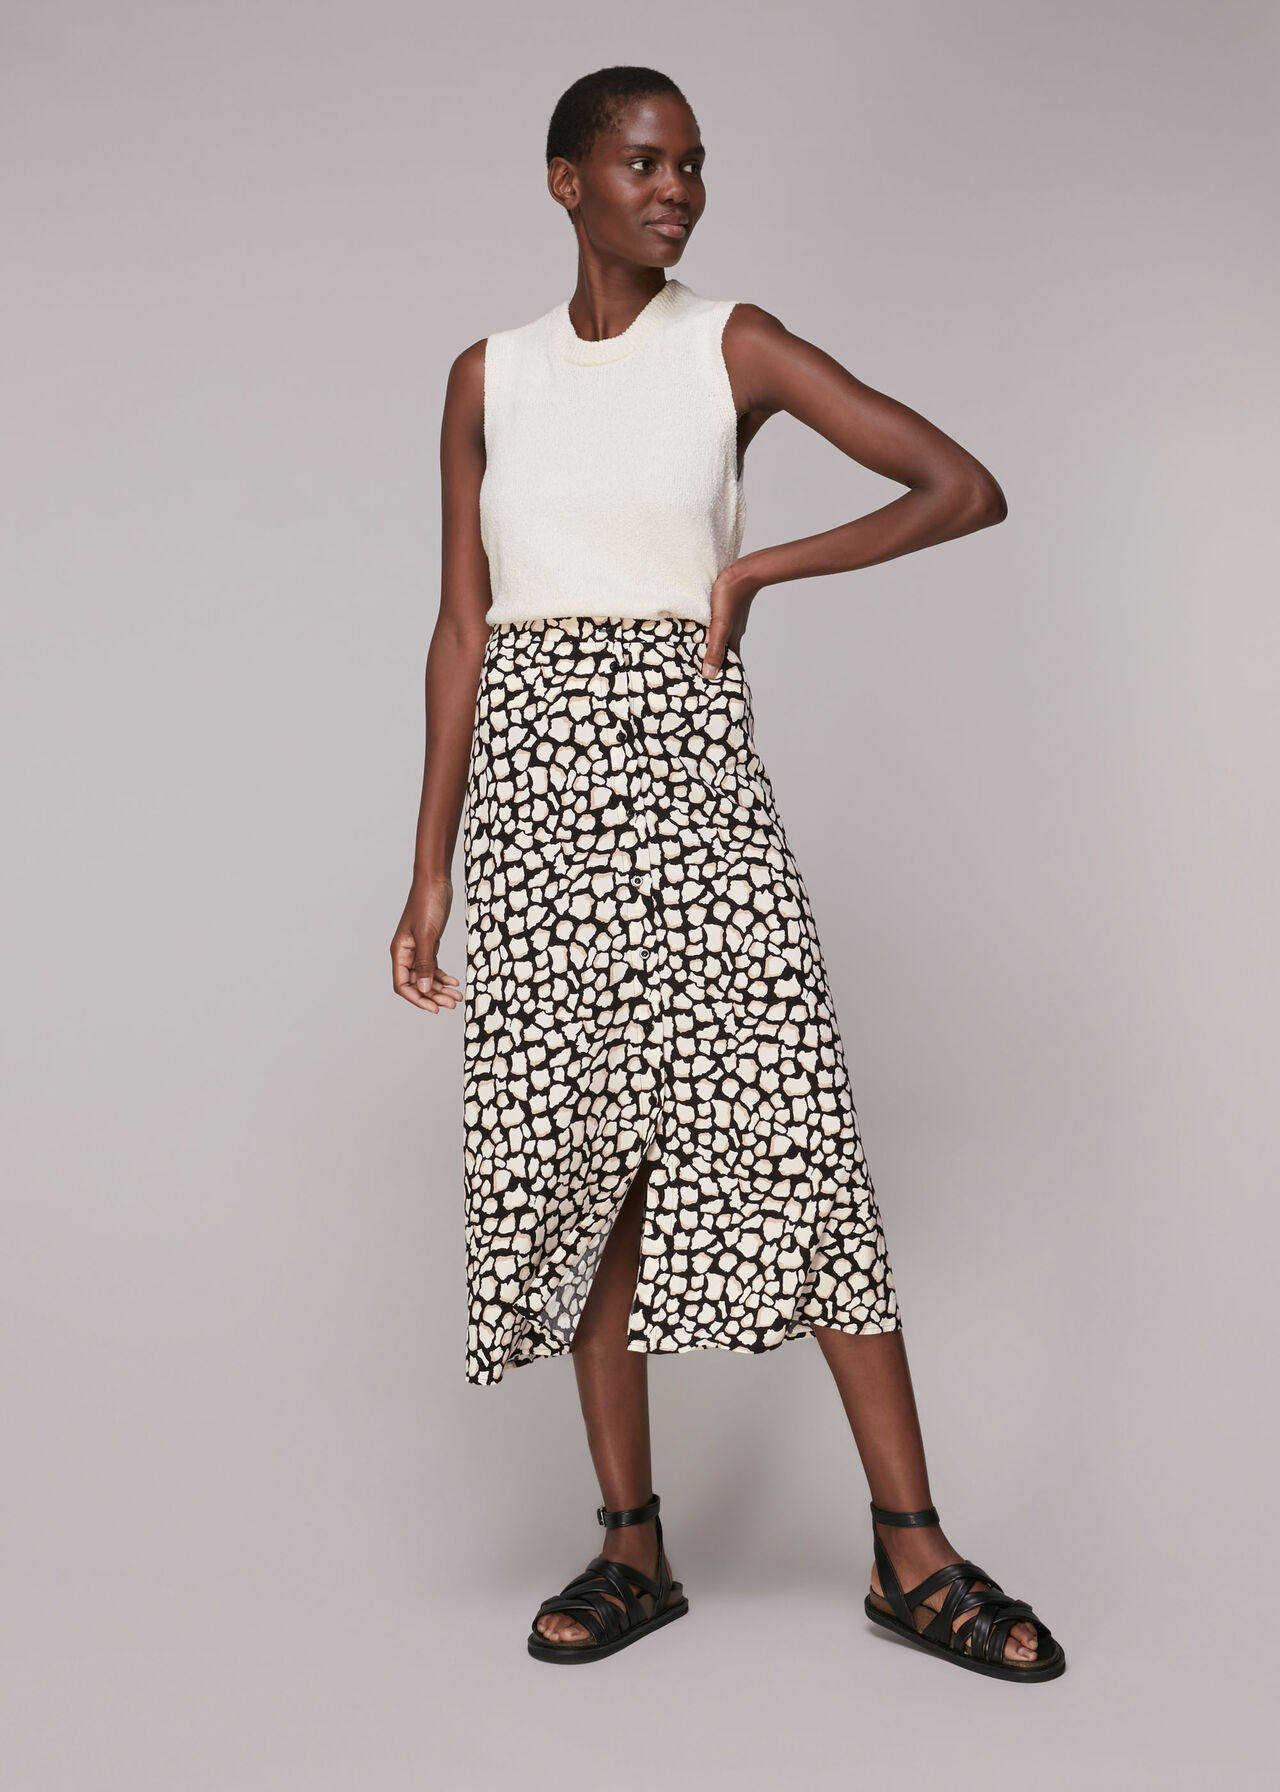 Giraffe Skirt